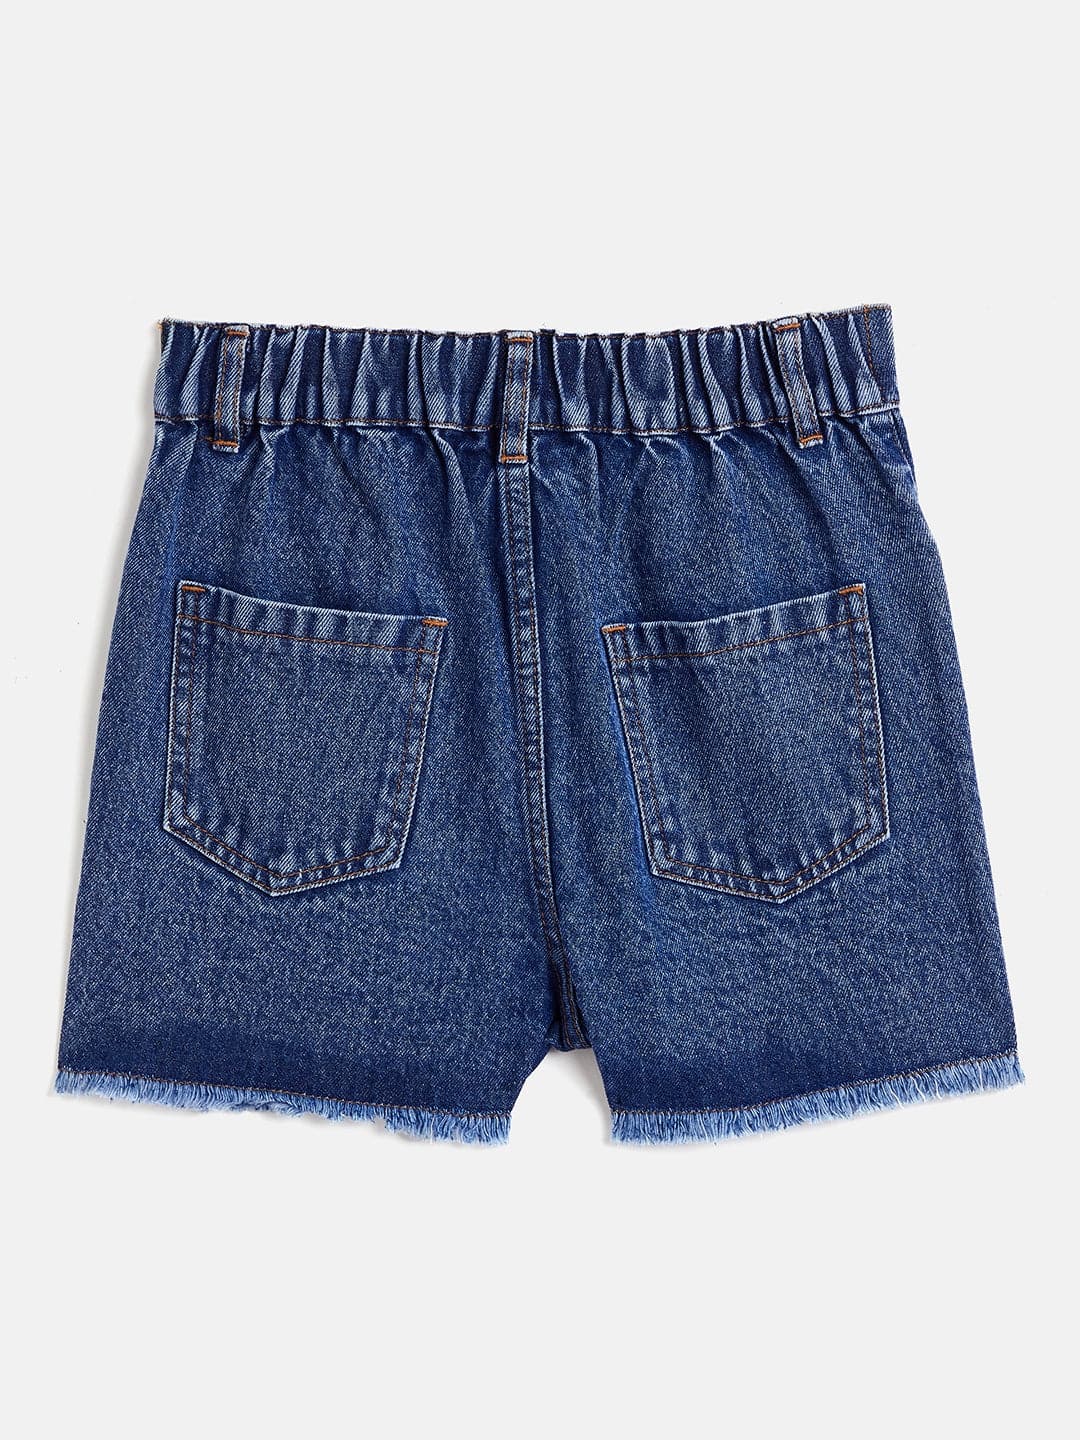 Girl's Blue Raw Hem One Side Pearl Denim Shorts - LYUSH KIDS